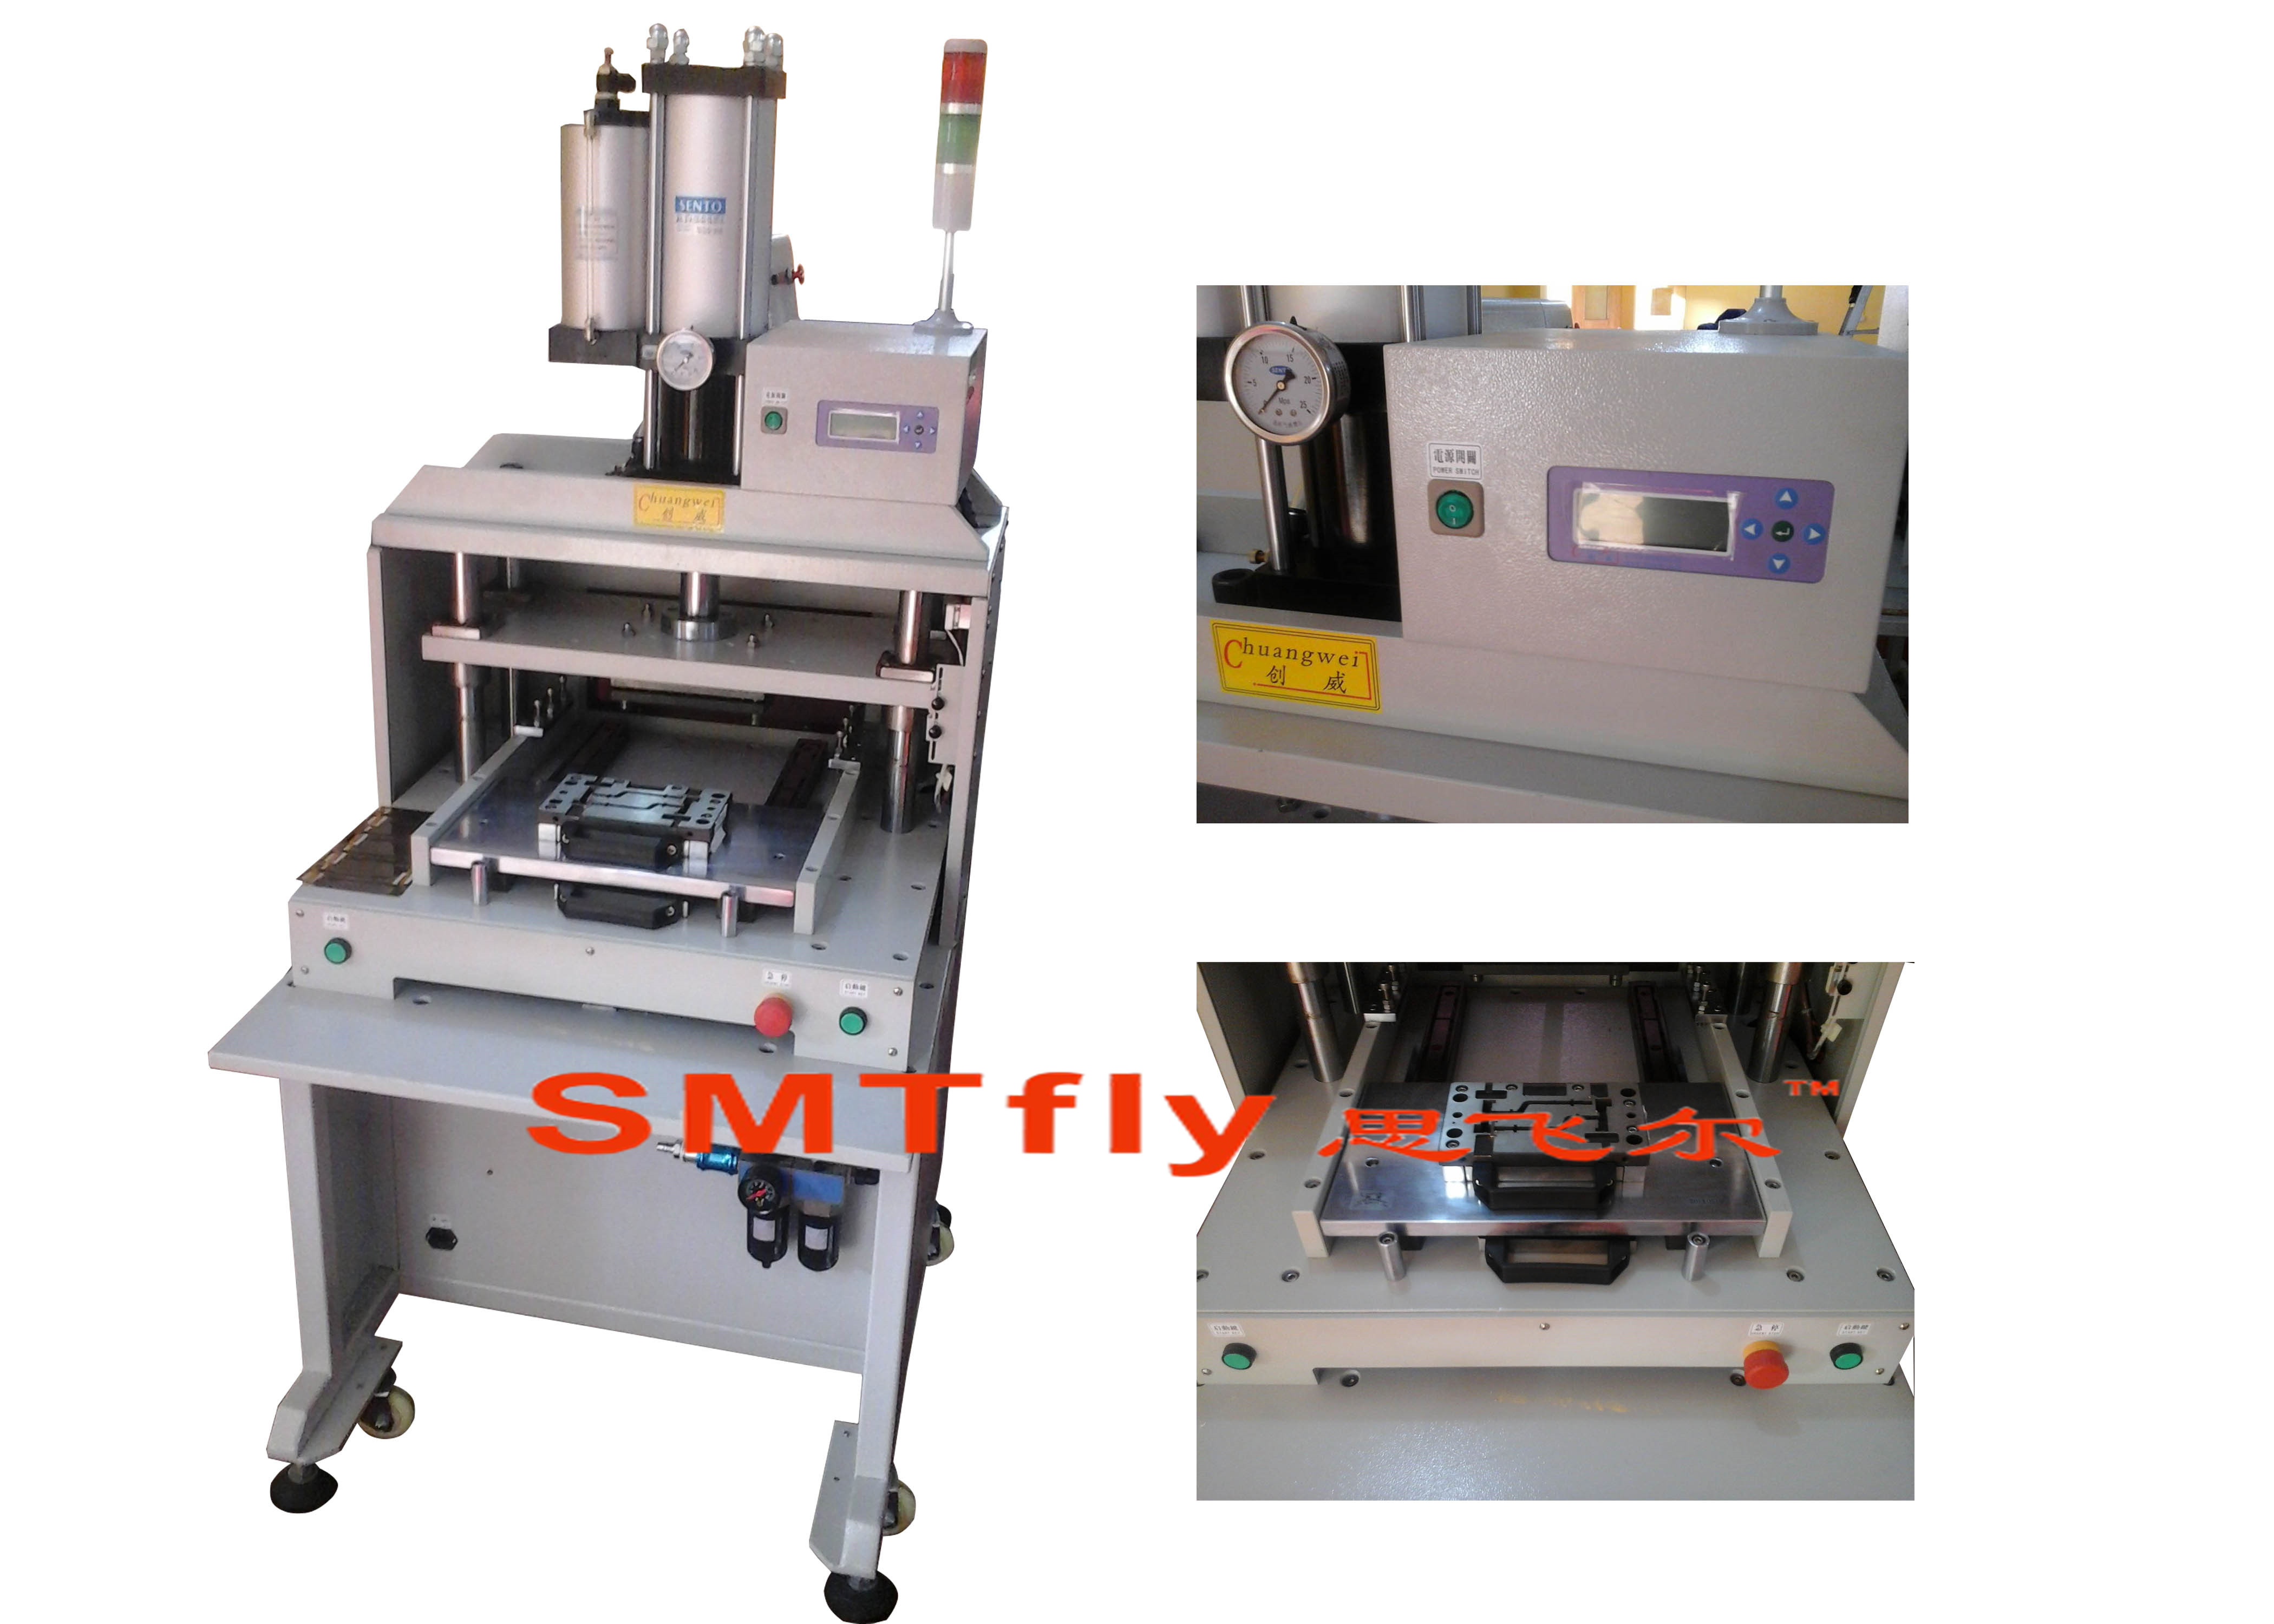 Die Separator Equipment,SMTfly-PE